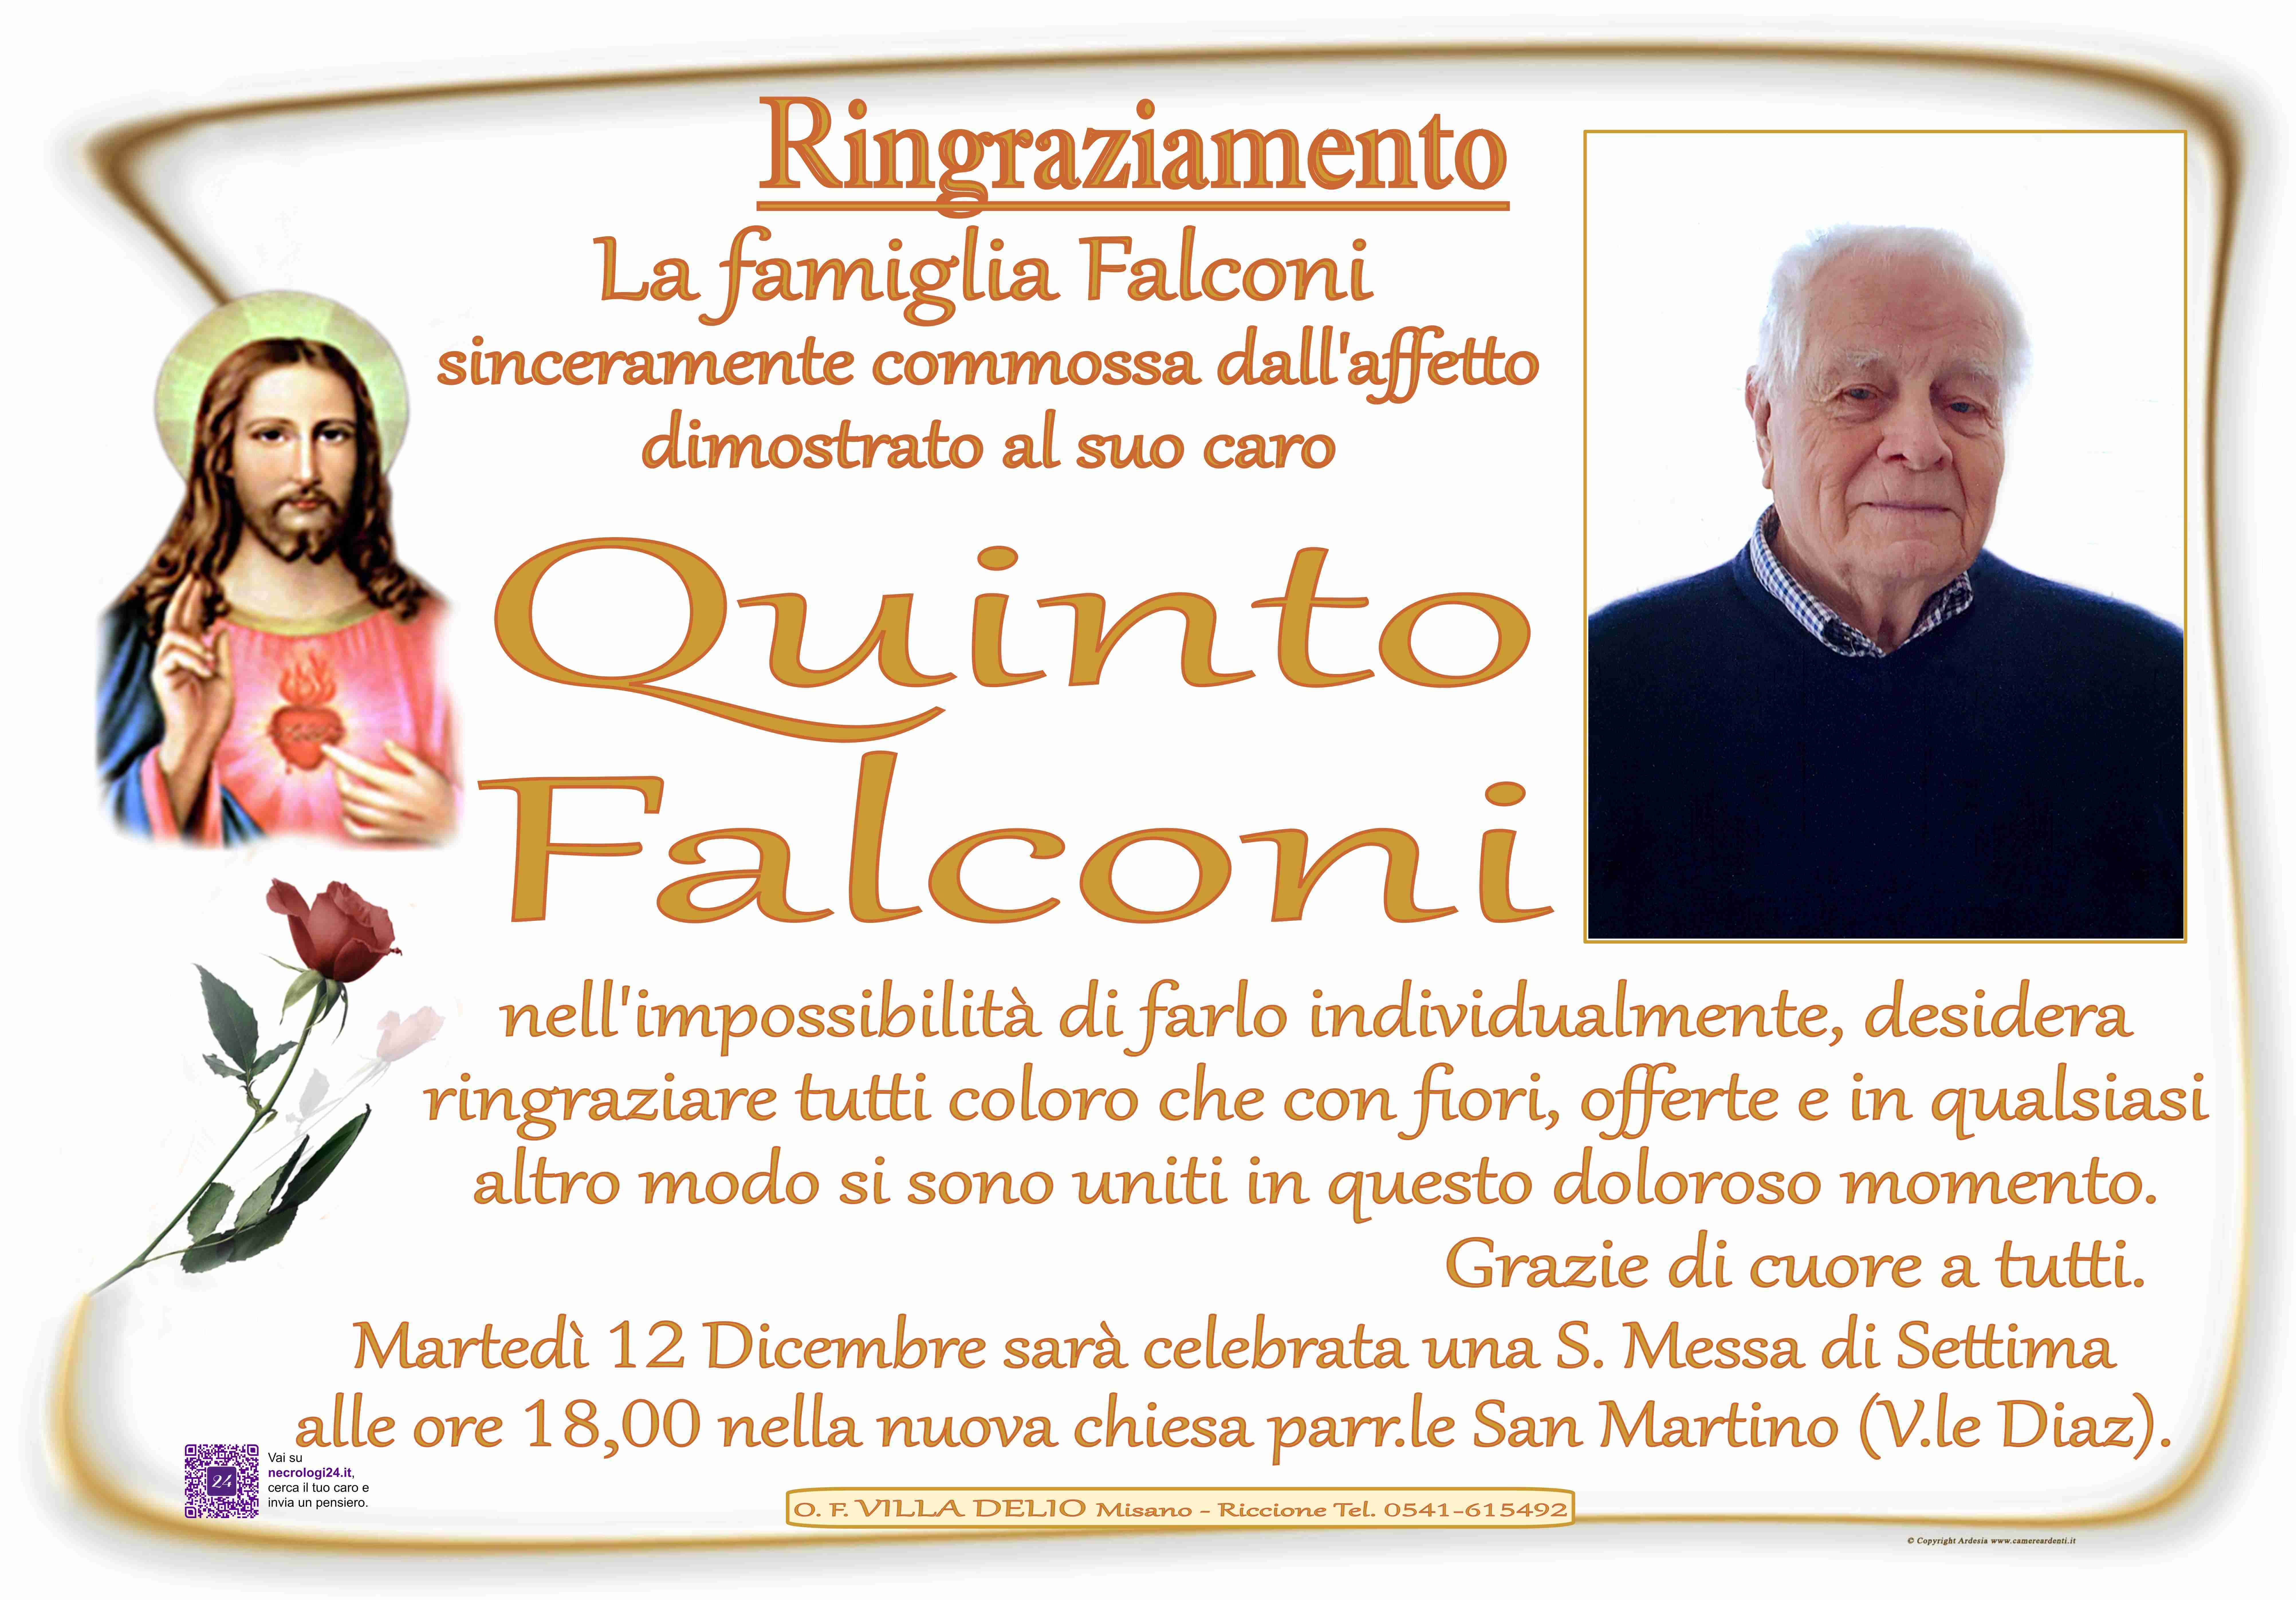 Quinto Falconi